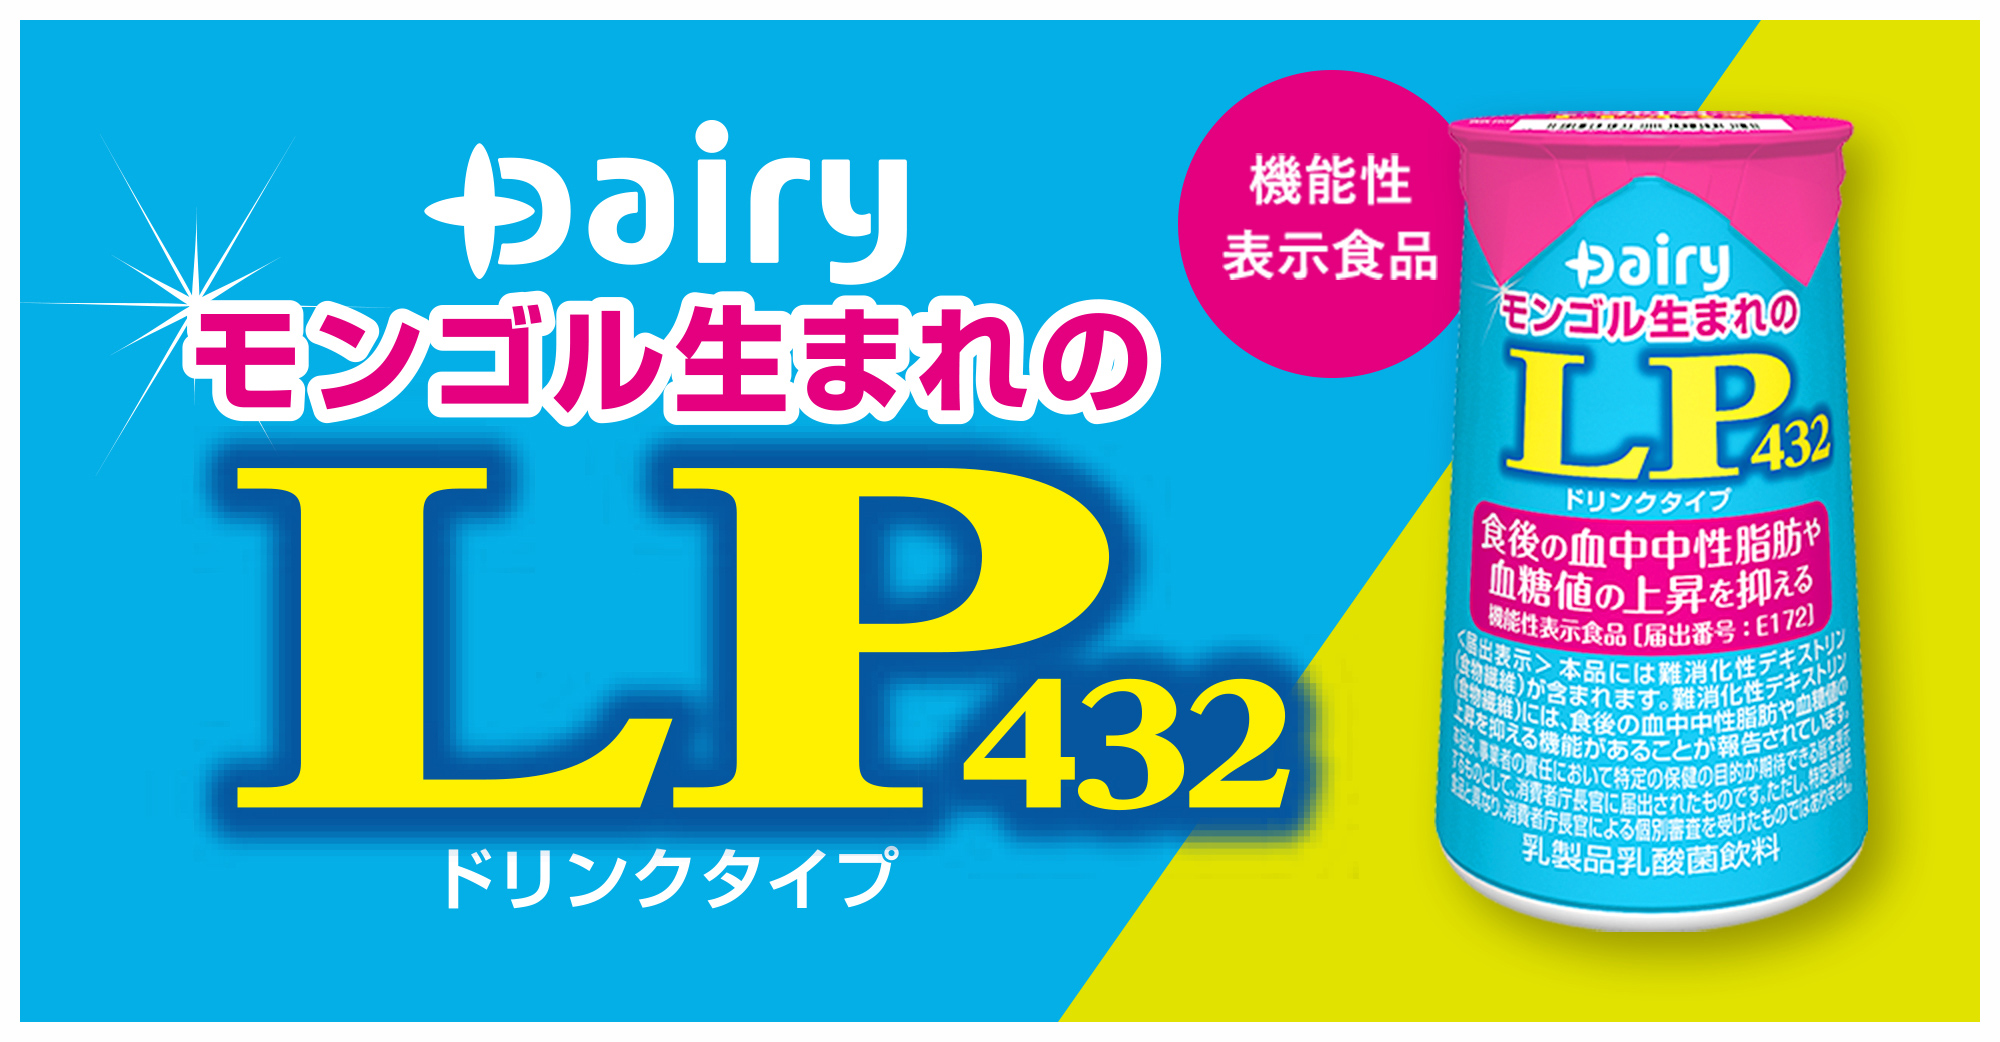 Dairy モンゴル生まれのLP432 ドリンクタイプ 機能性表示食品